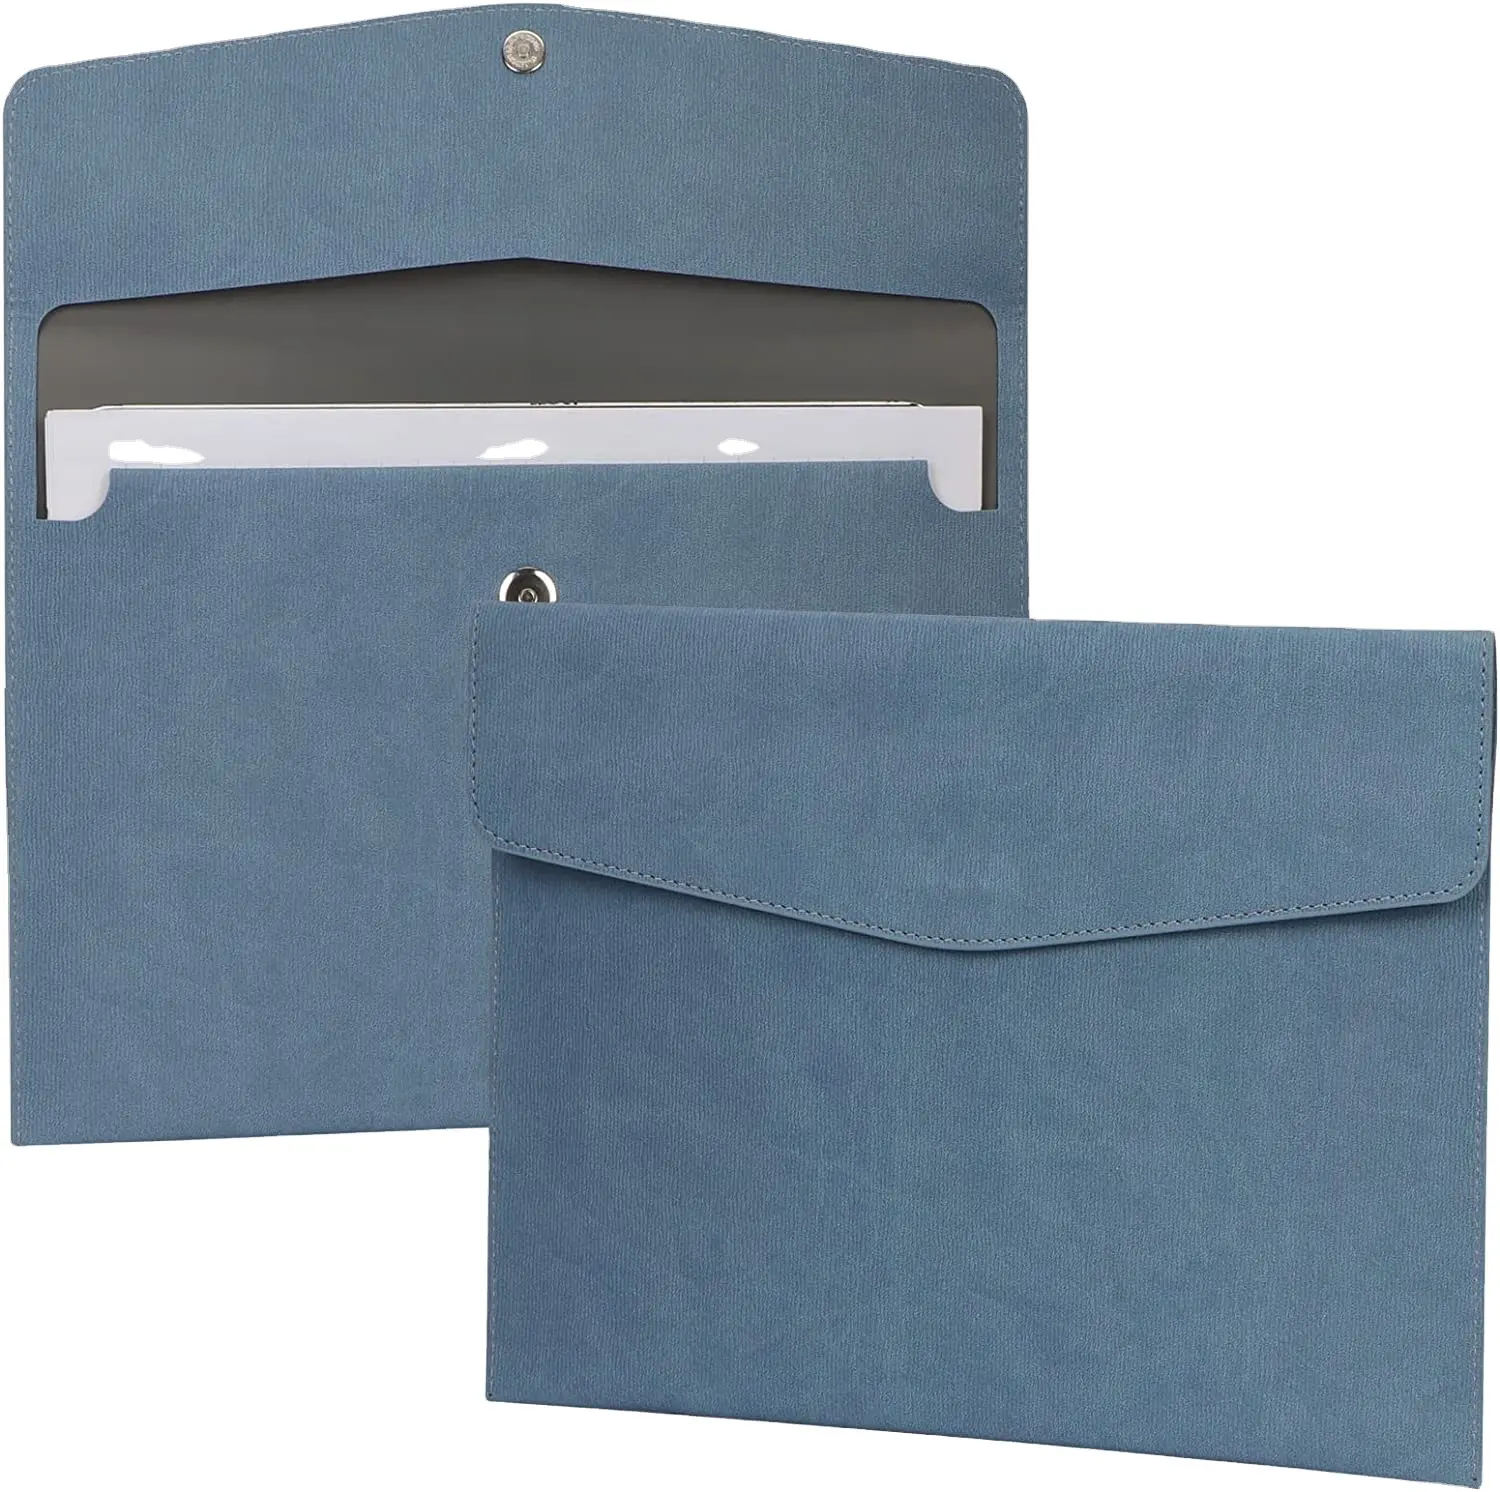 PU Leather A4 Document Holder Organizer filling Envelope File folder Case